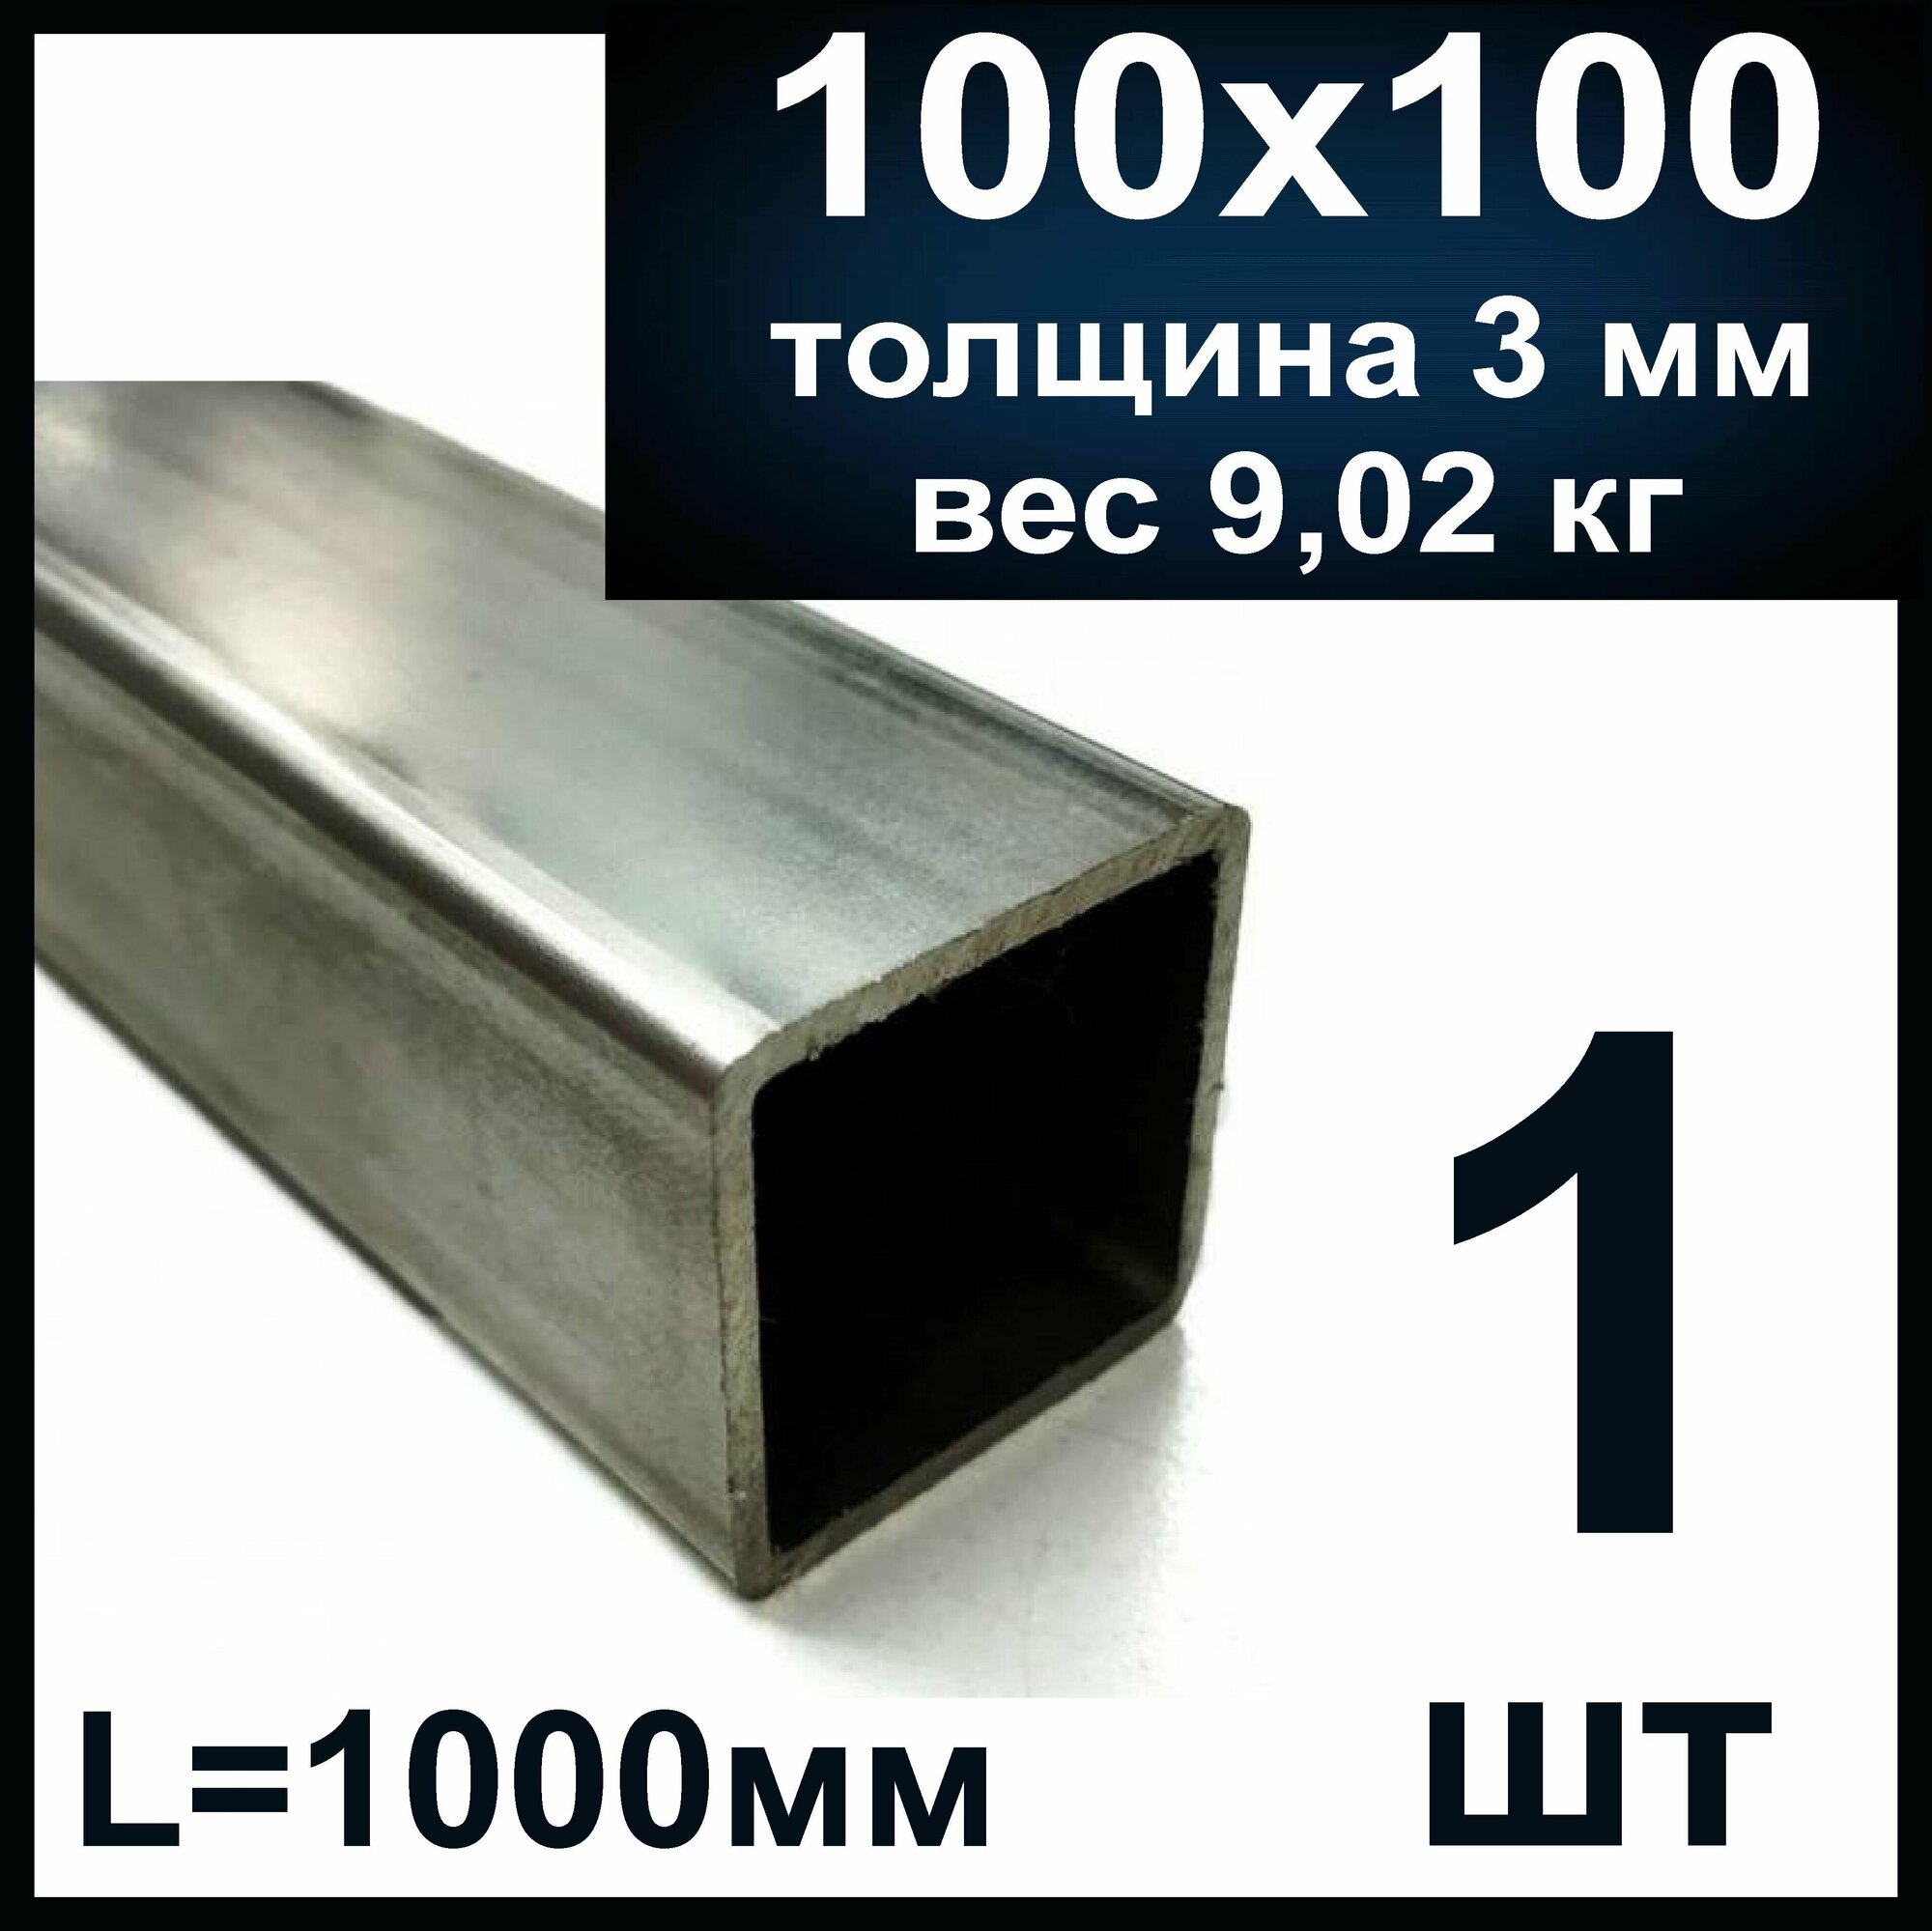 Труба профильная 100х100 стальная толщина 3 мм. Металлическая длина 1000 мм (1м)